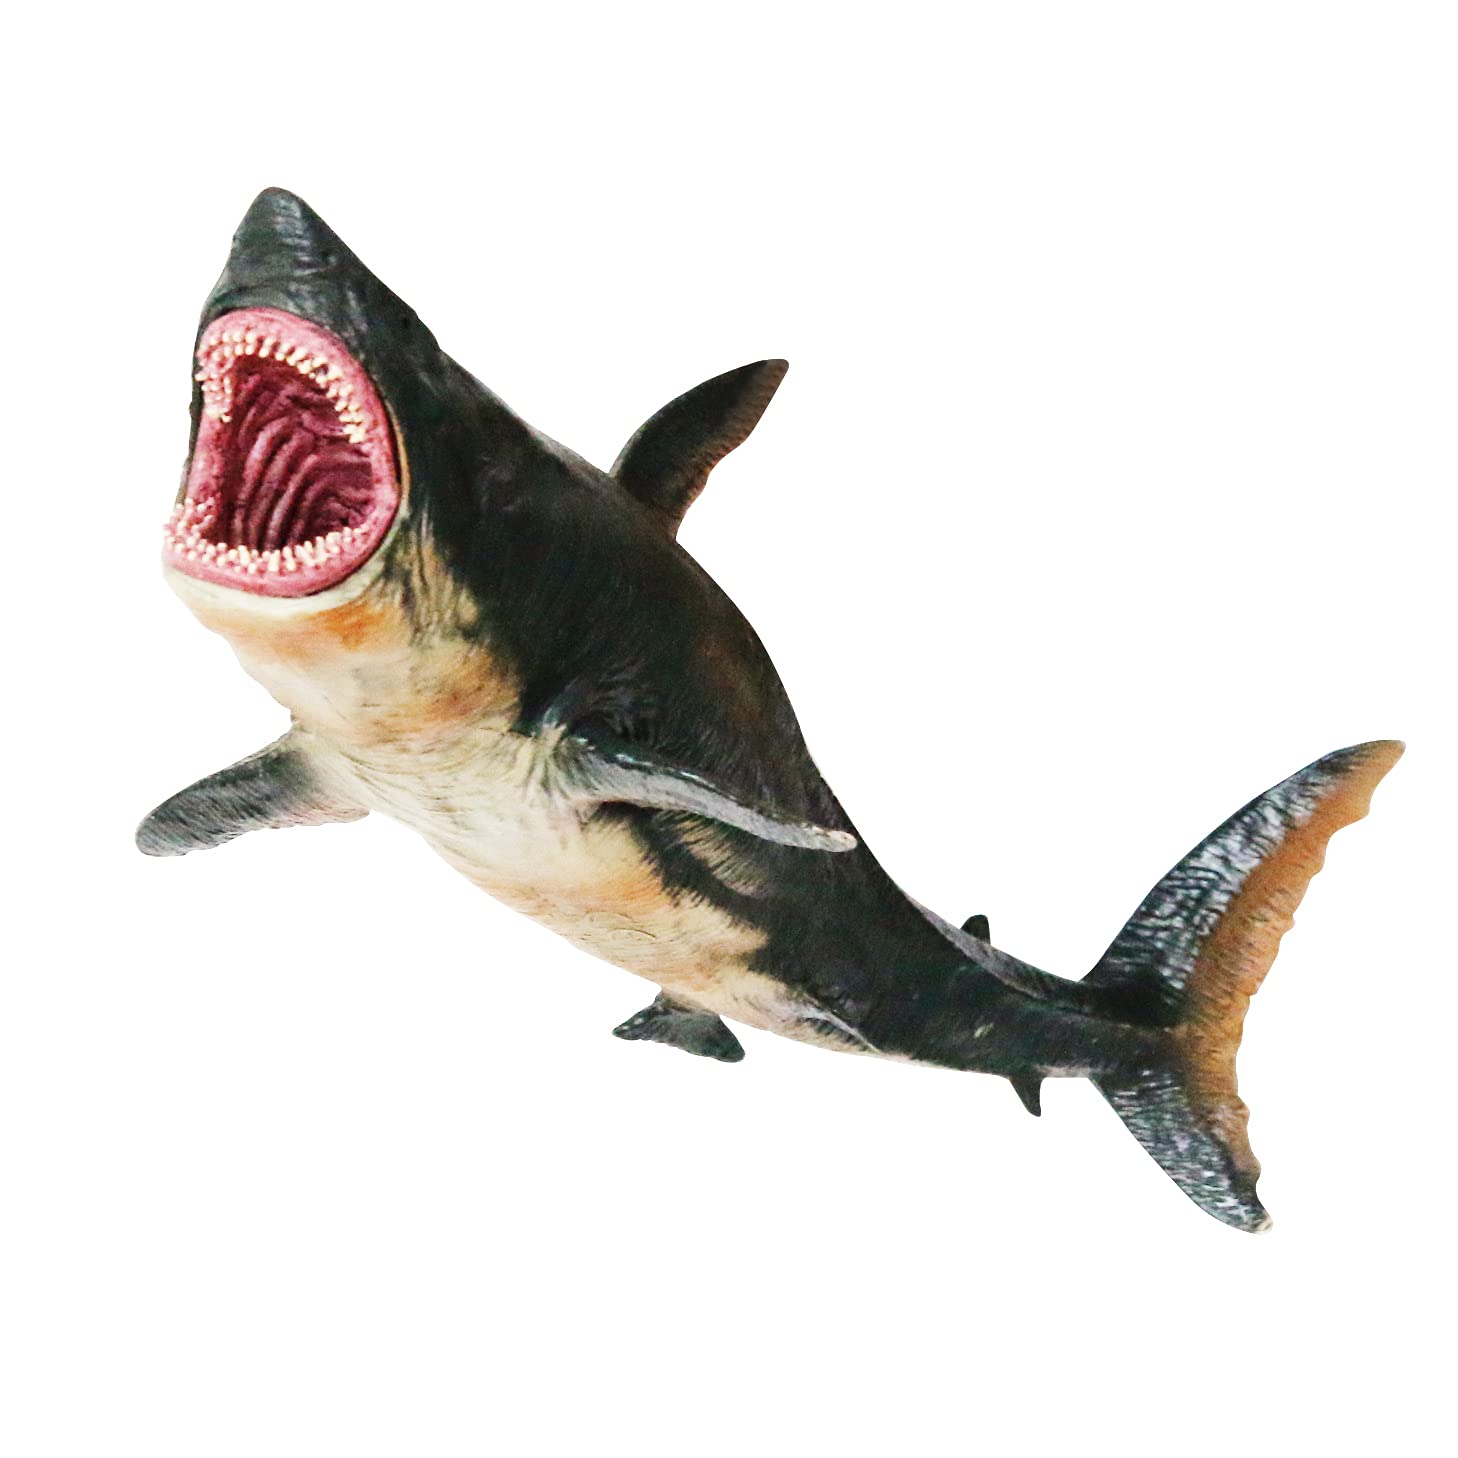 Eoivsh Large Shark Toys Megalodon.Interesting Shark Toys for Kids